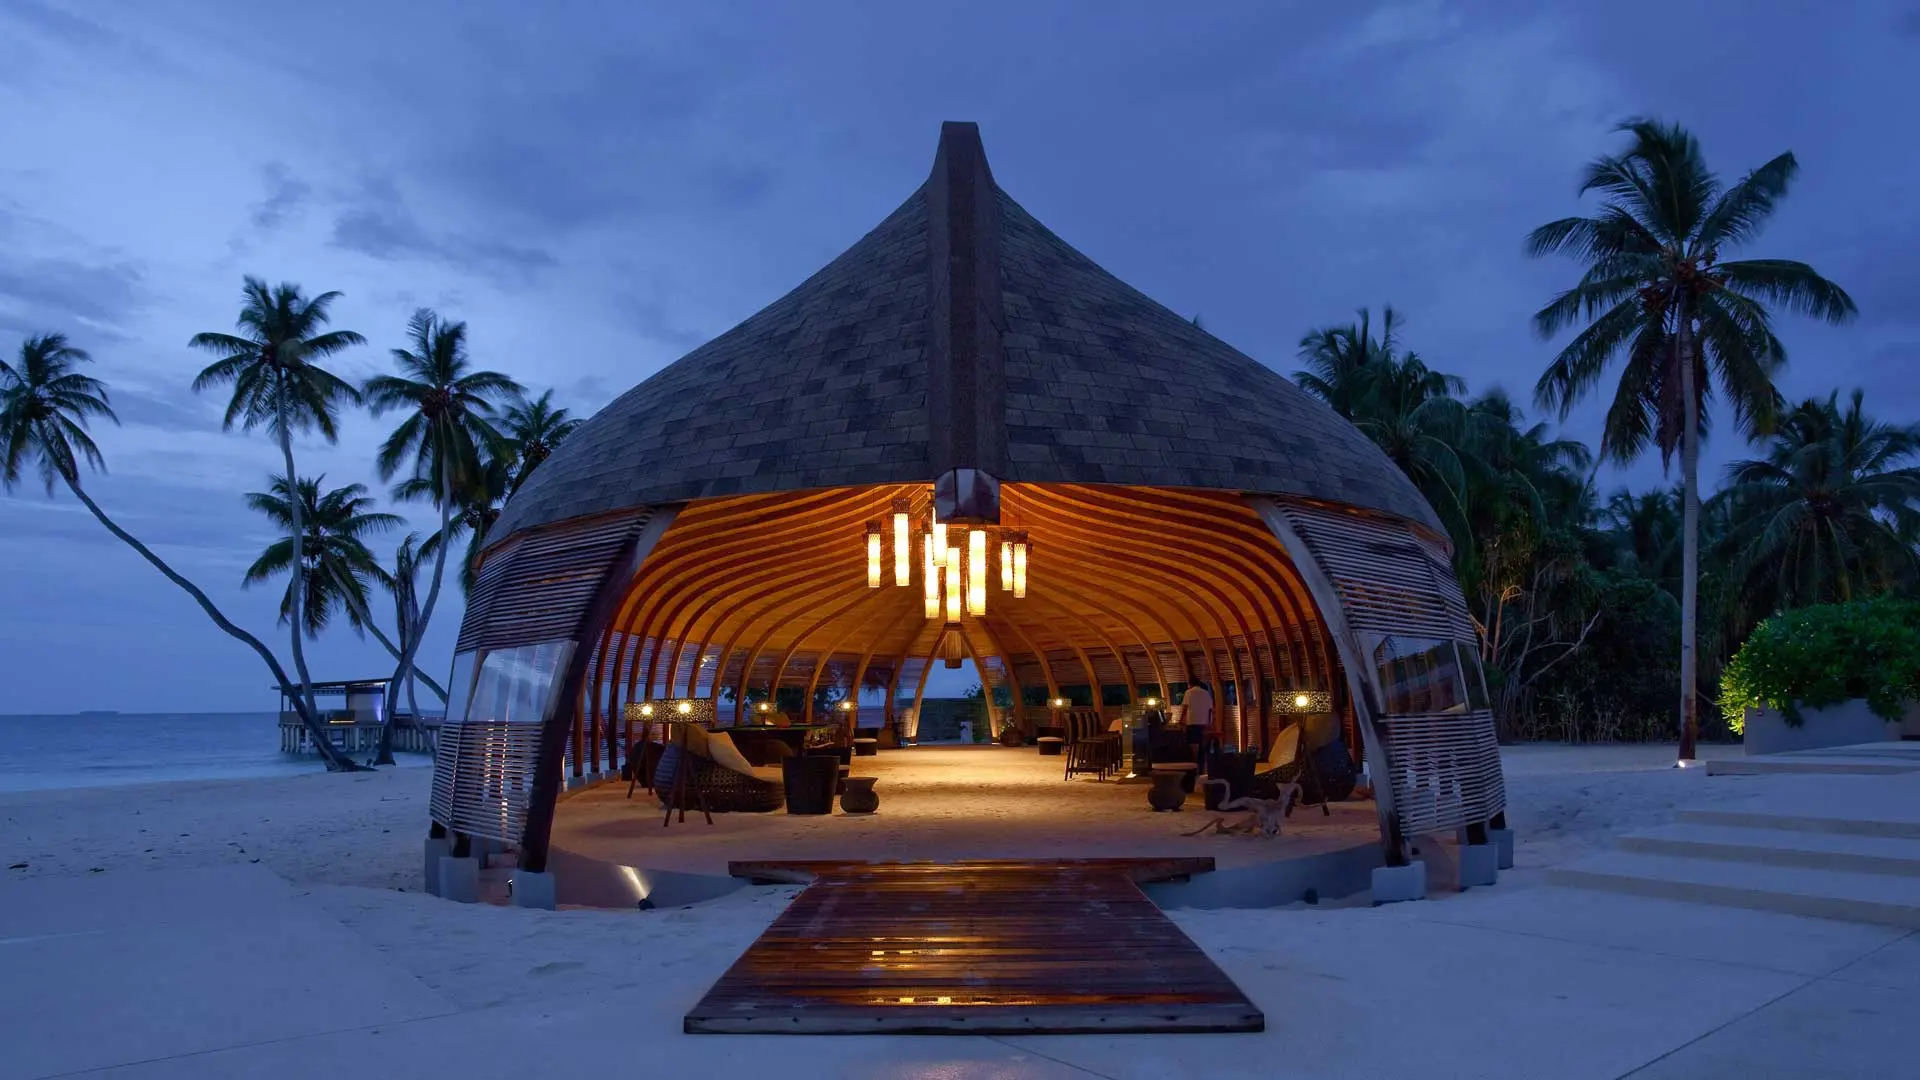 Hotel review Style' - Park Hyatt Maldives Hadahaa - 1